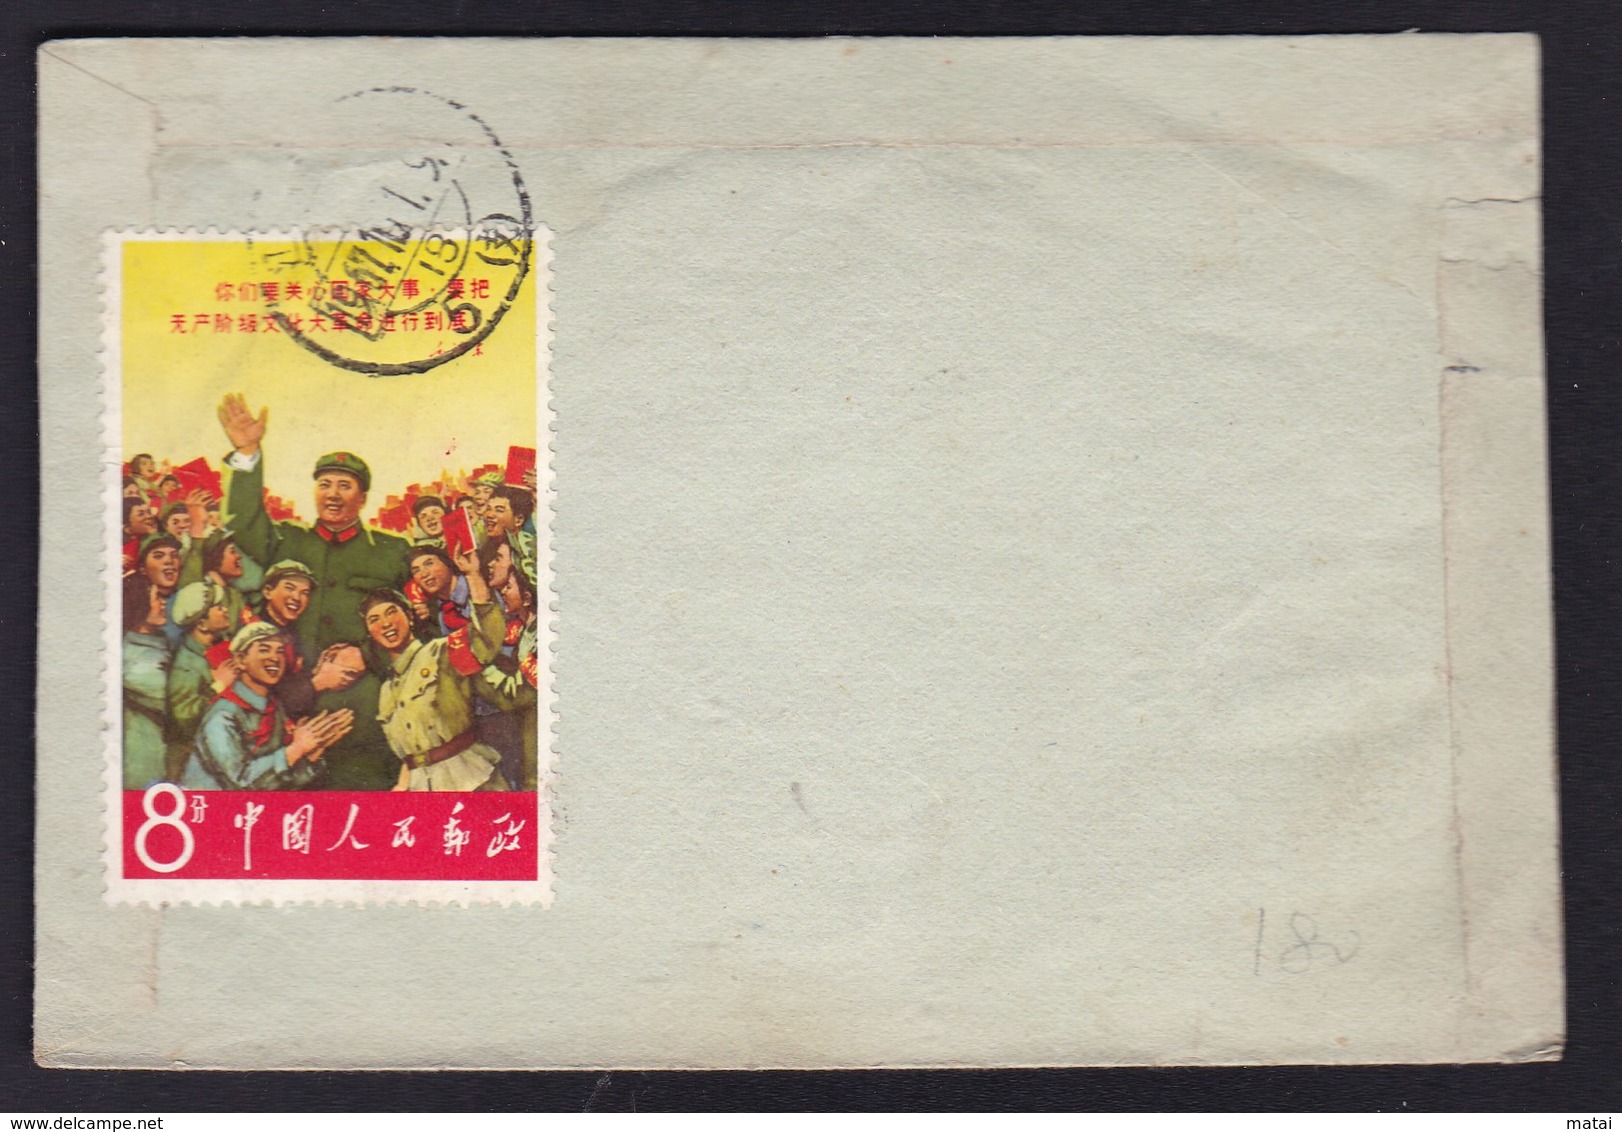 CHINA CHINE CINA   1967 JIANGSU  SUZHOU TO JIANGSU  WUXI COVER RARE!!!!! - Covers & Documents